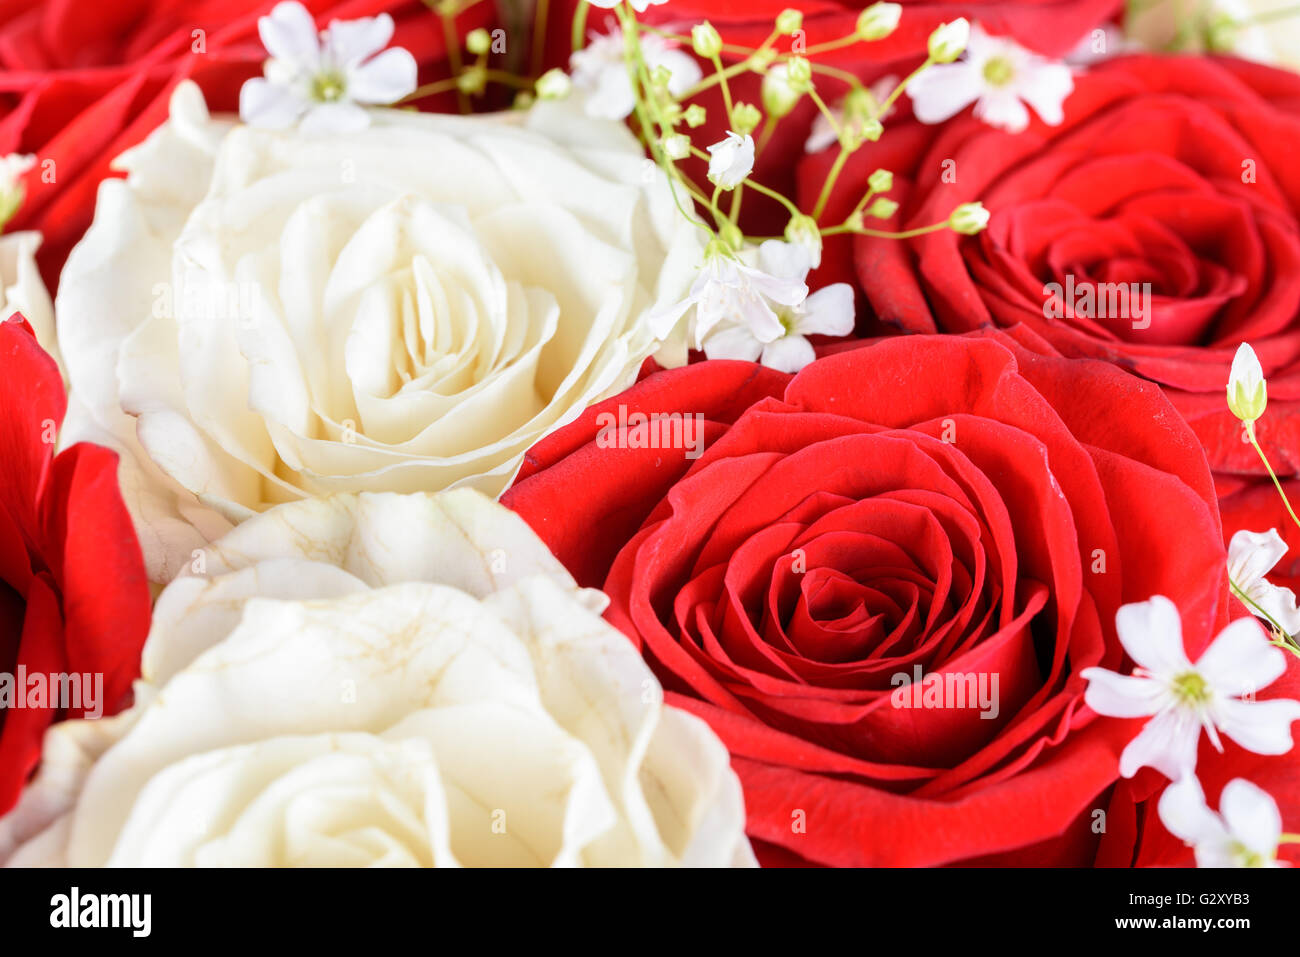 Roten und weißen Rosen Hochzeit Blumen Blumenstrauß Stockfoto